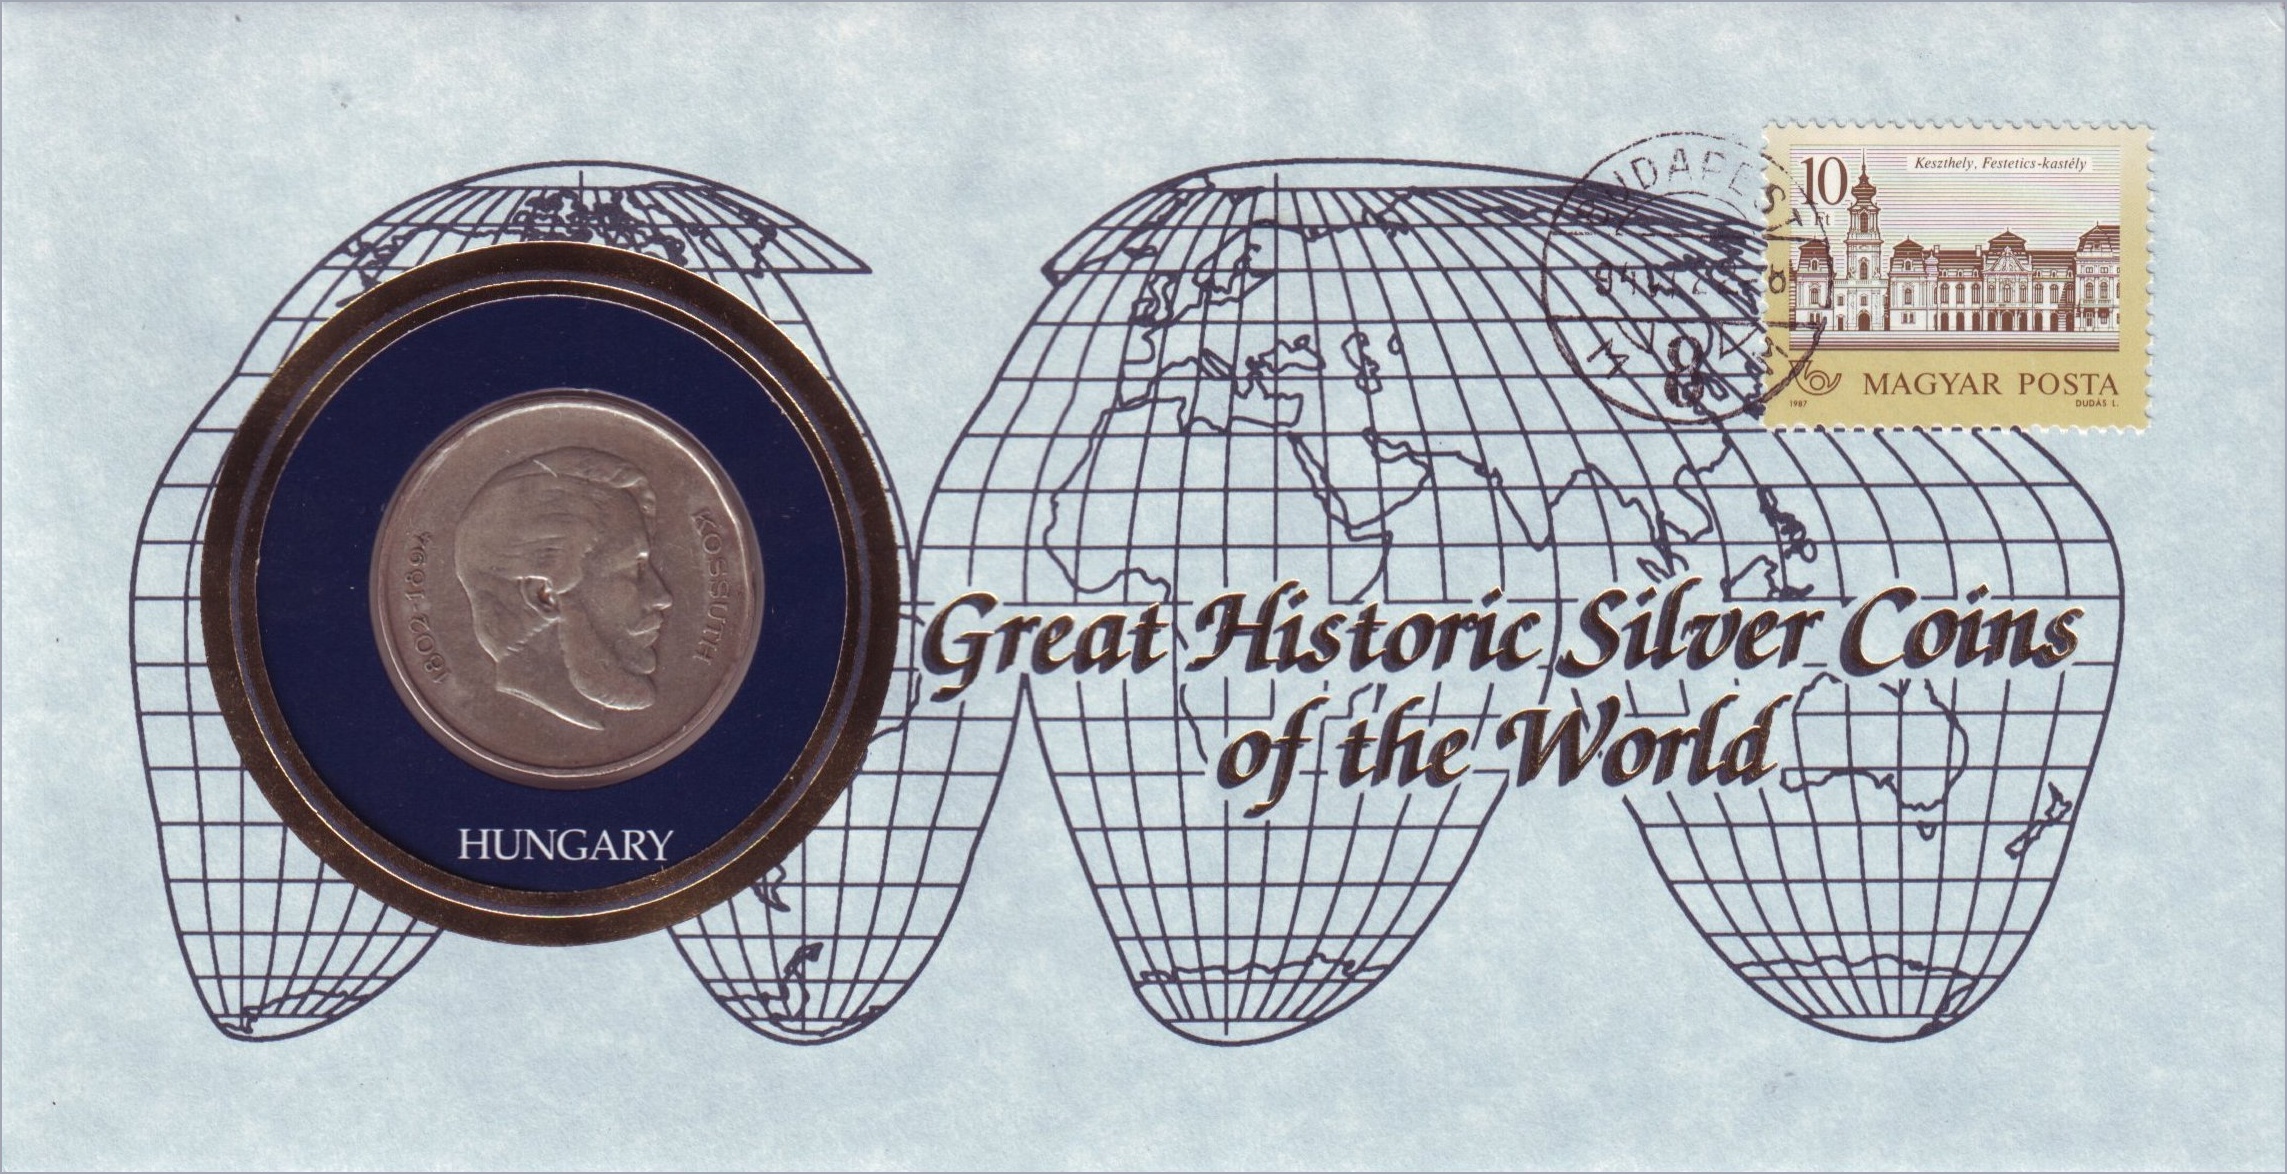 http://www.ermeskepeslap.hu/ermeskepeslapok/great_historic_silver_coins_of_the_world_5ft/www_ermeskepeslap_hu_5ft_great_historic_silver_coins_of_the_world_nagy.jpg